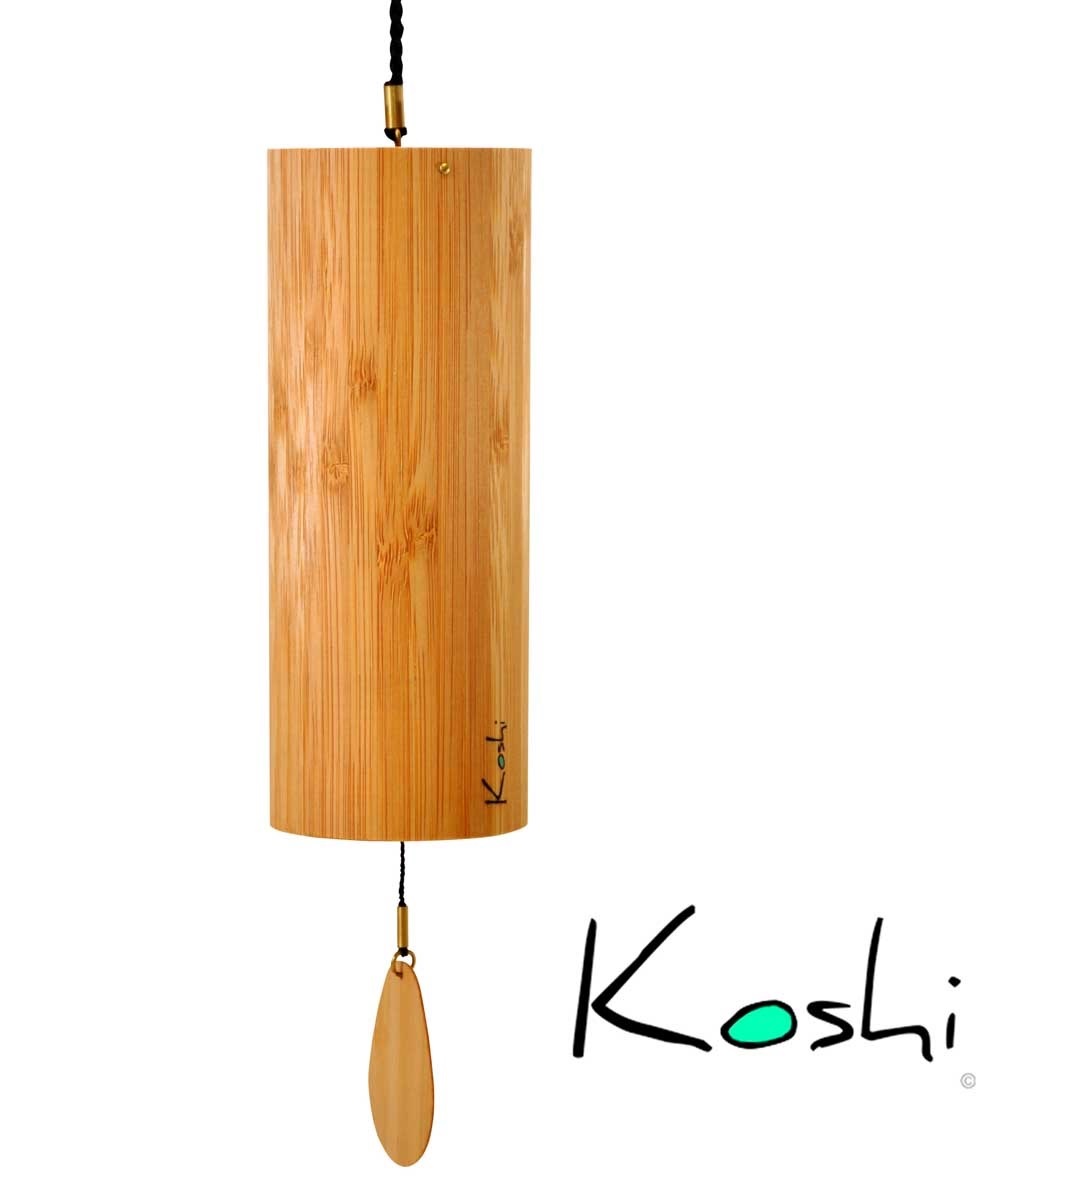 Koshi Chime Aria 6,3 cm diam, 16,5 cm A C E A B C E B